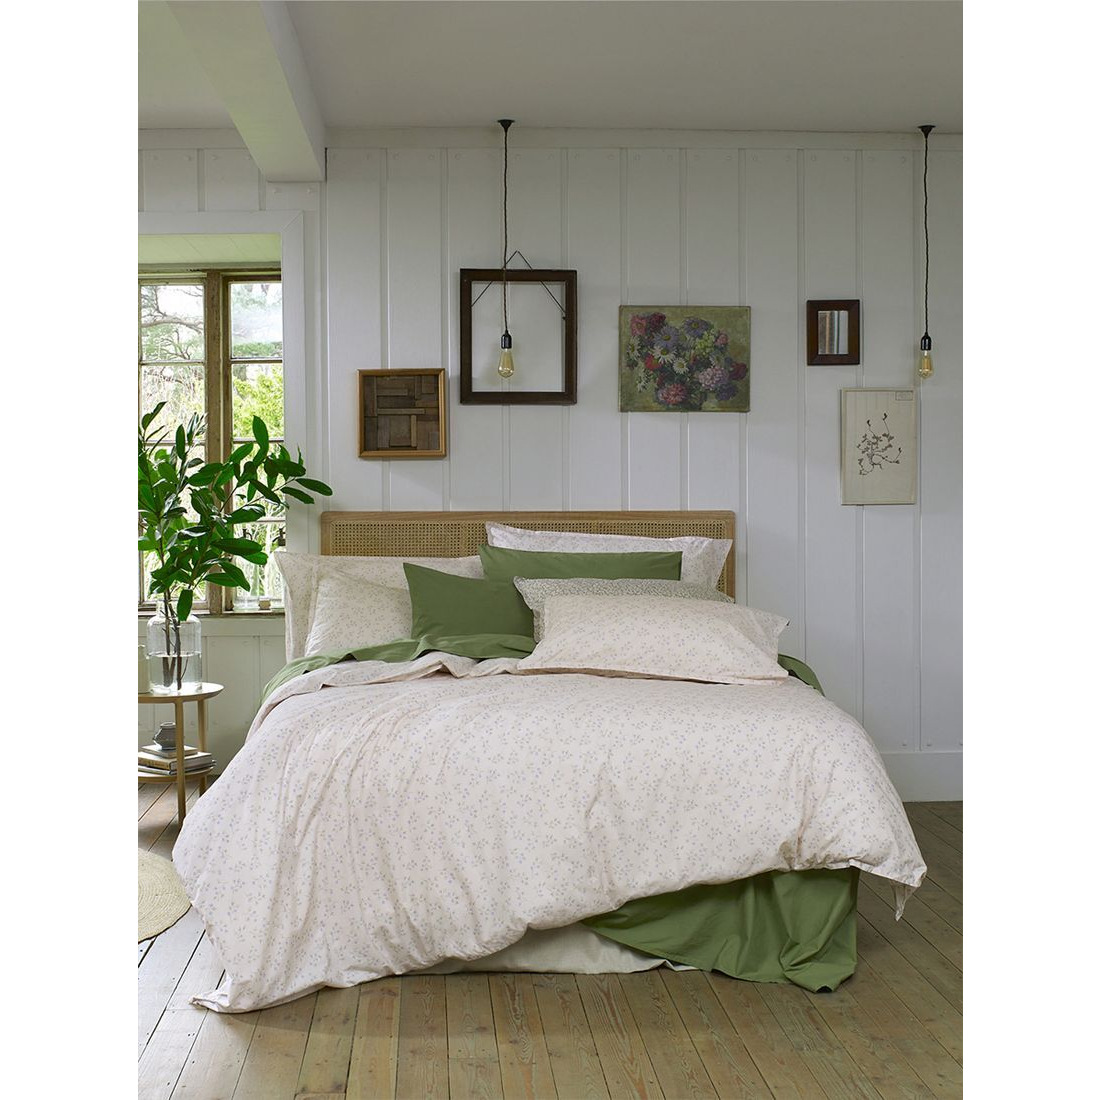 Piglet in Bed Spring Sprig Cotton Flat Sheet - image 1